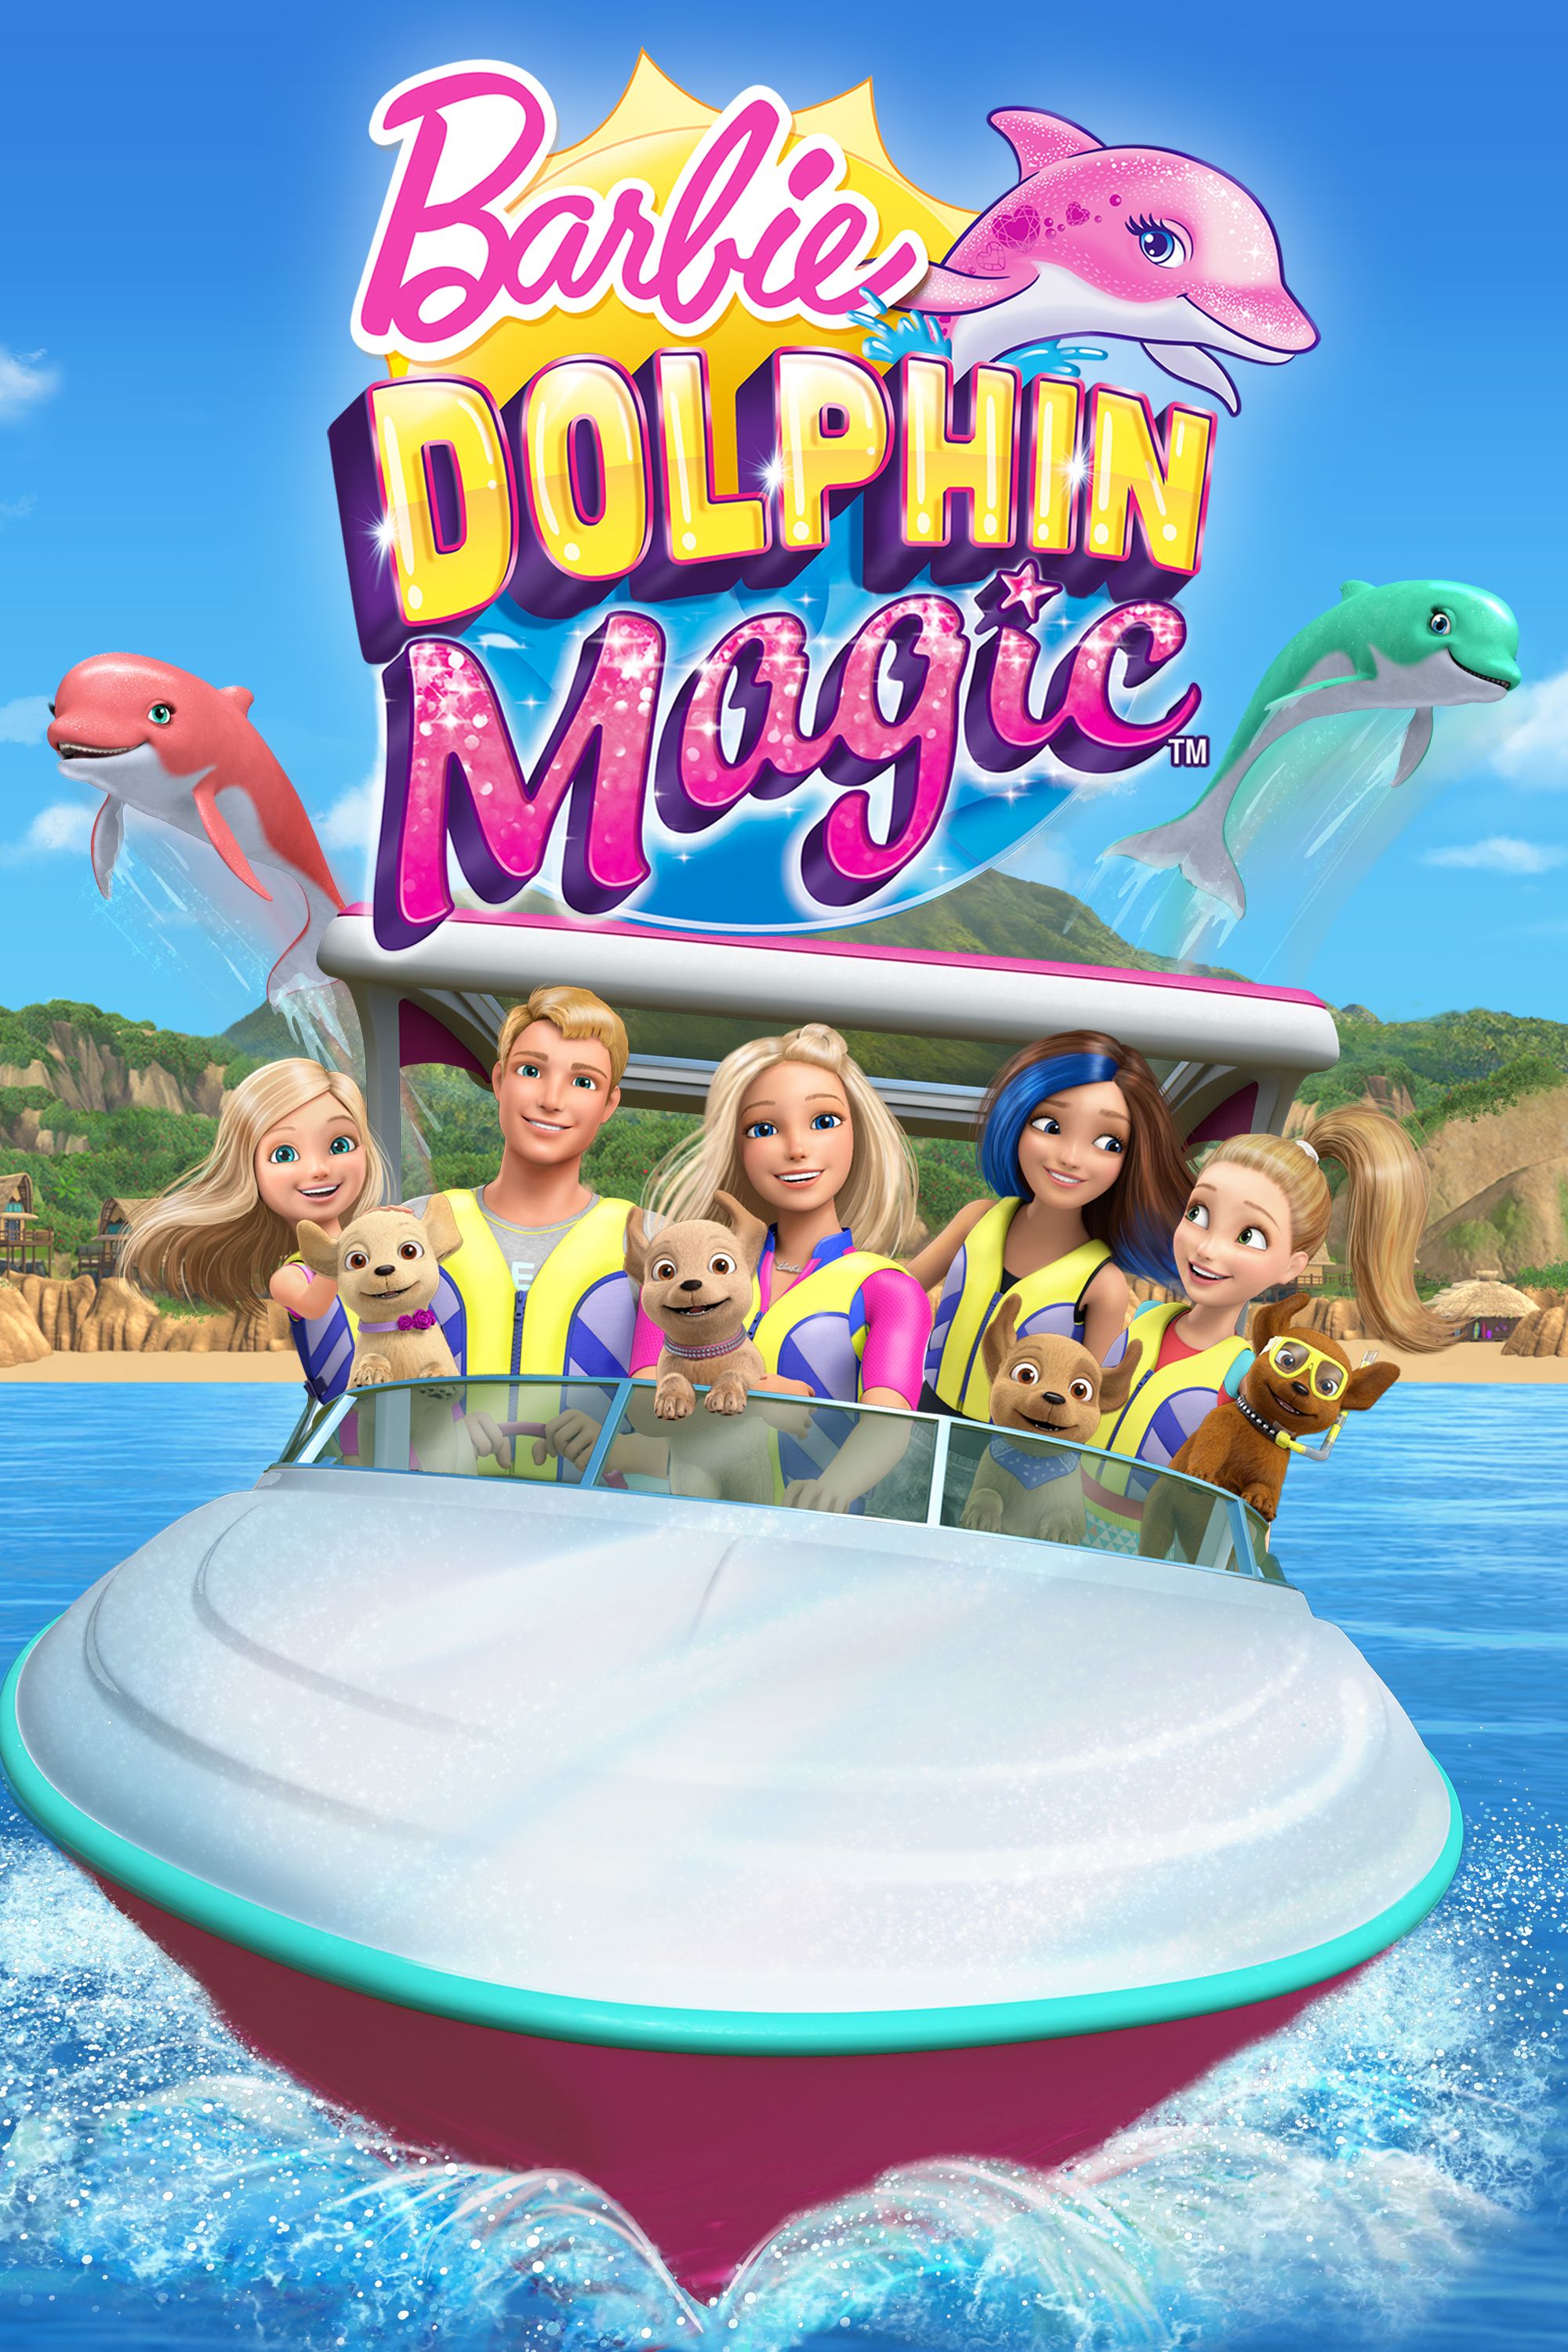 Barbie: Dolphin Magic | Full Movie 